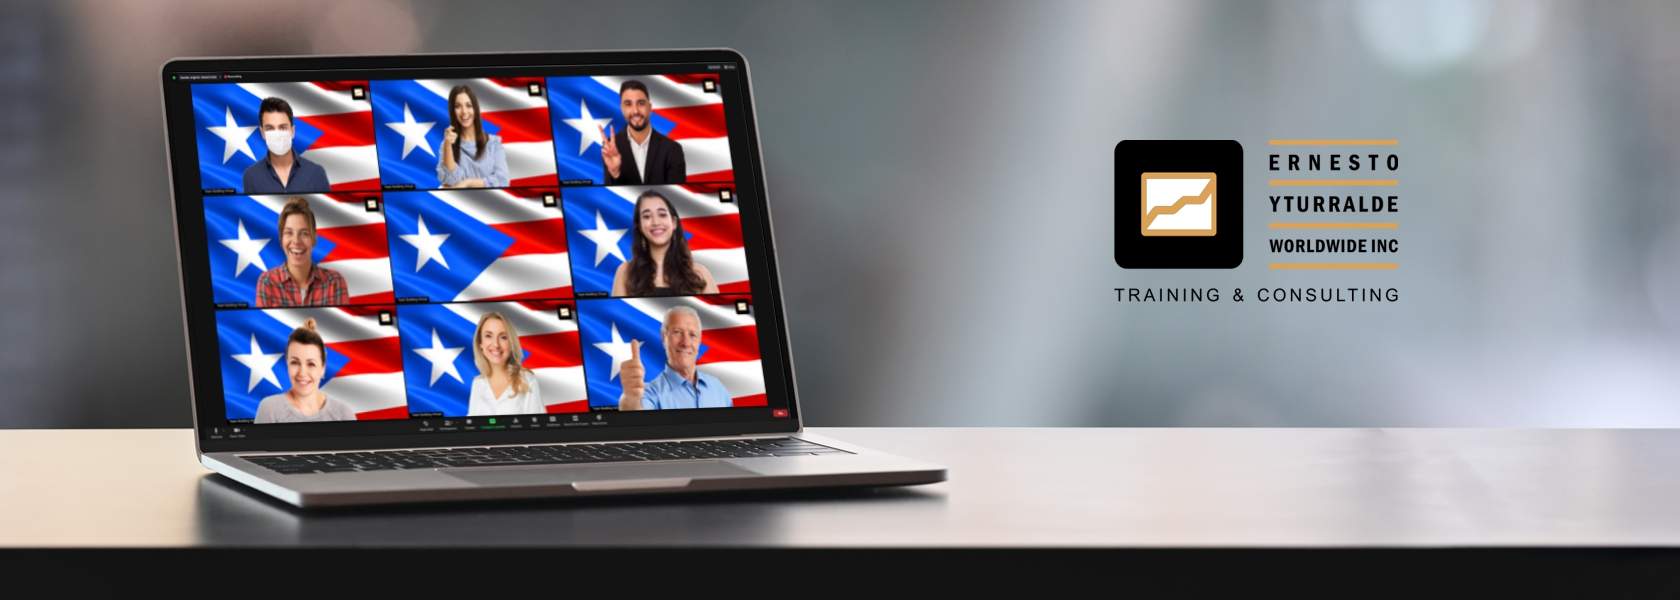 Puerto Rico Team Building, programas corporativos online y full-day para desarrollar las nuevas habilidades de tus equipos de trabajo remotos frente a los cambios